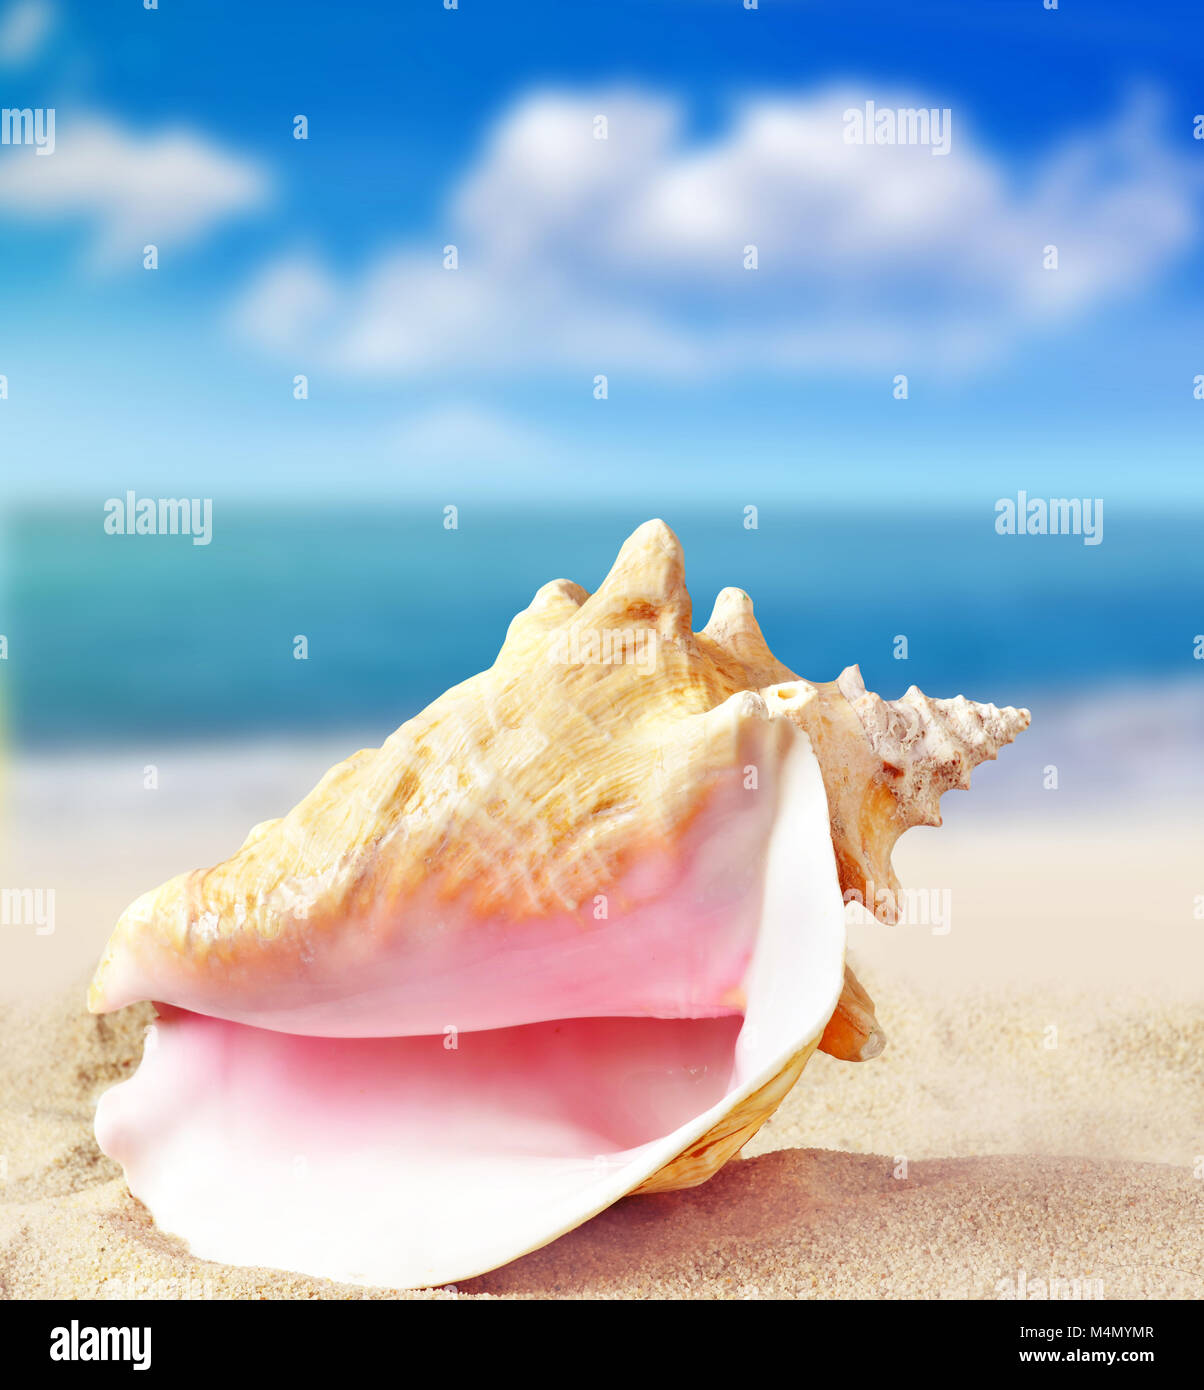 Conchas en la playa de arena. Concepto de verano. Foto de stock